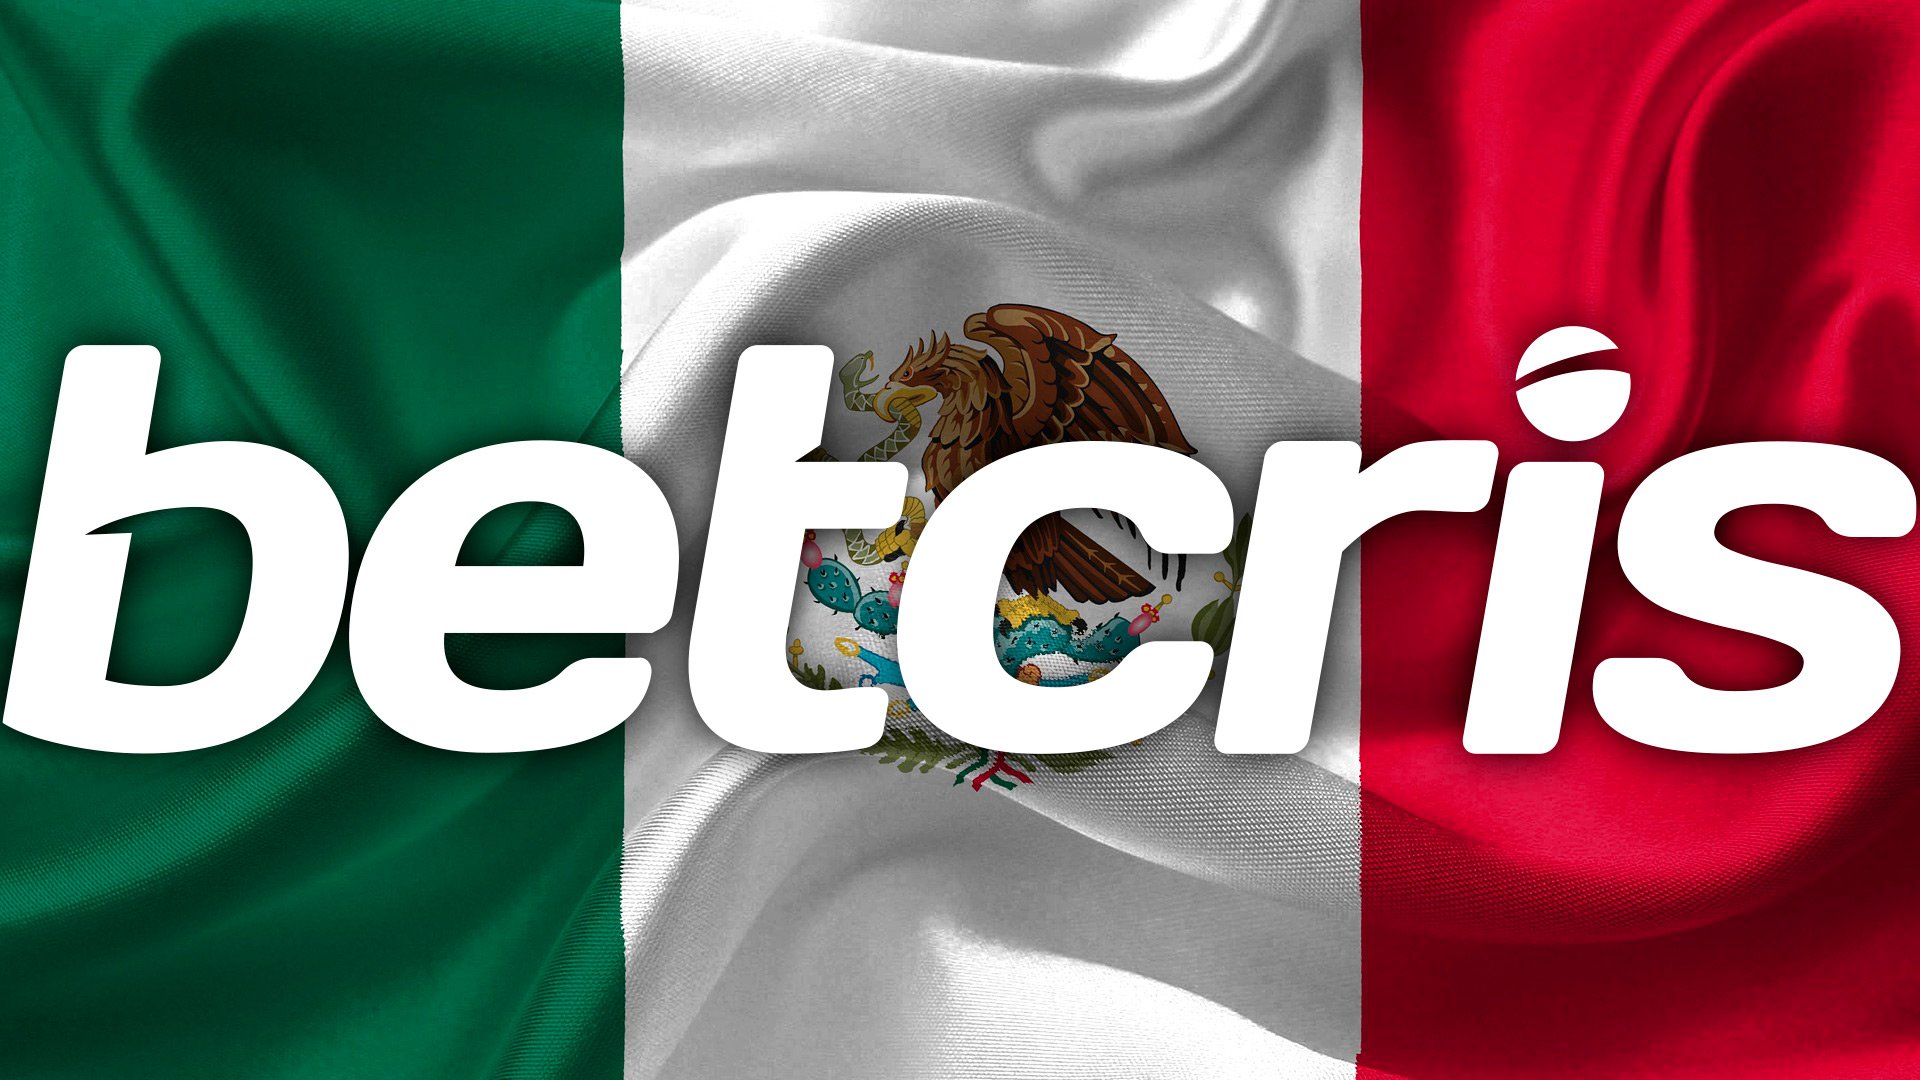 Betcris estará presente en la Tercera Convención Internacional del Juego en México